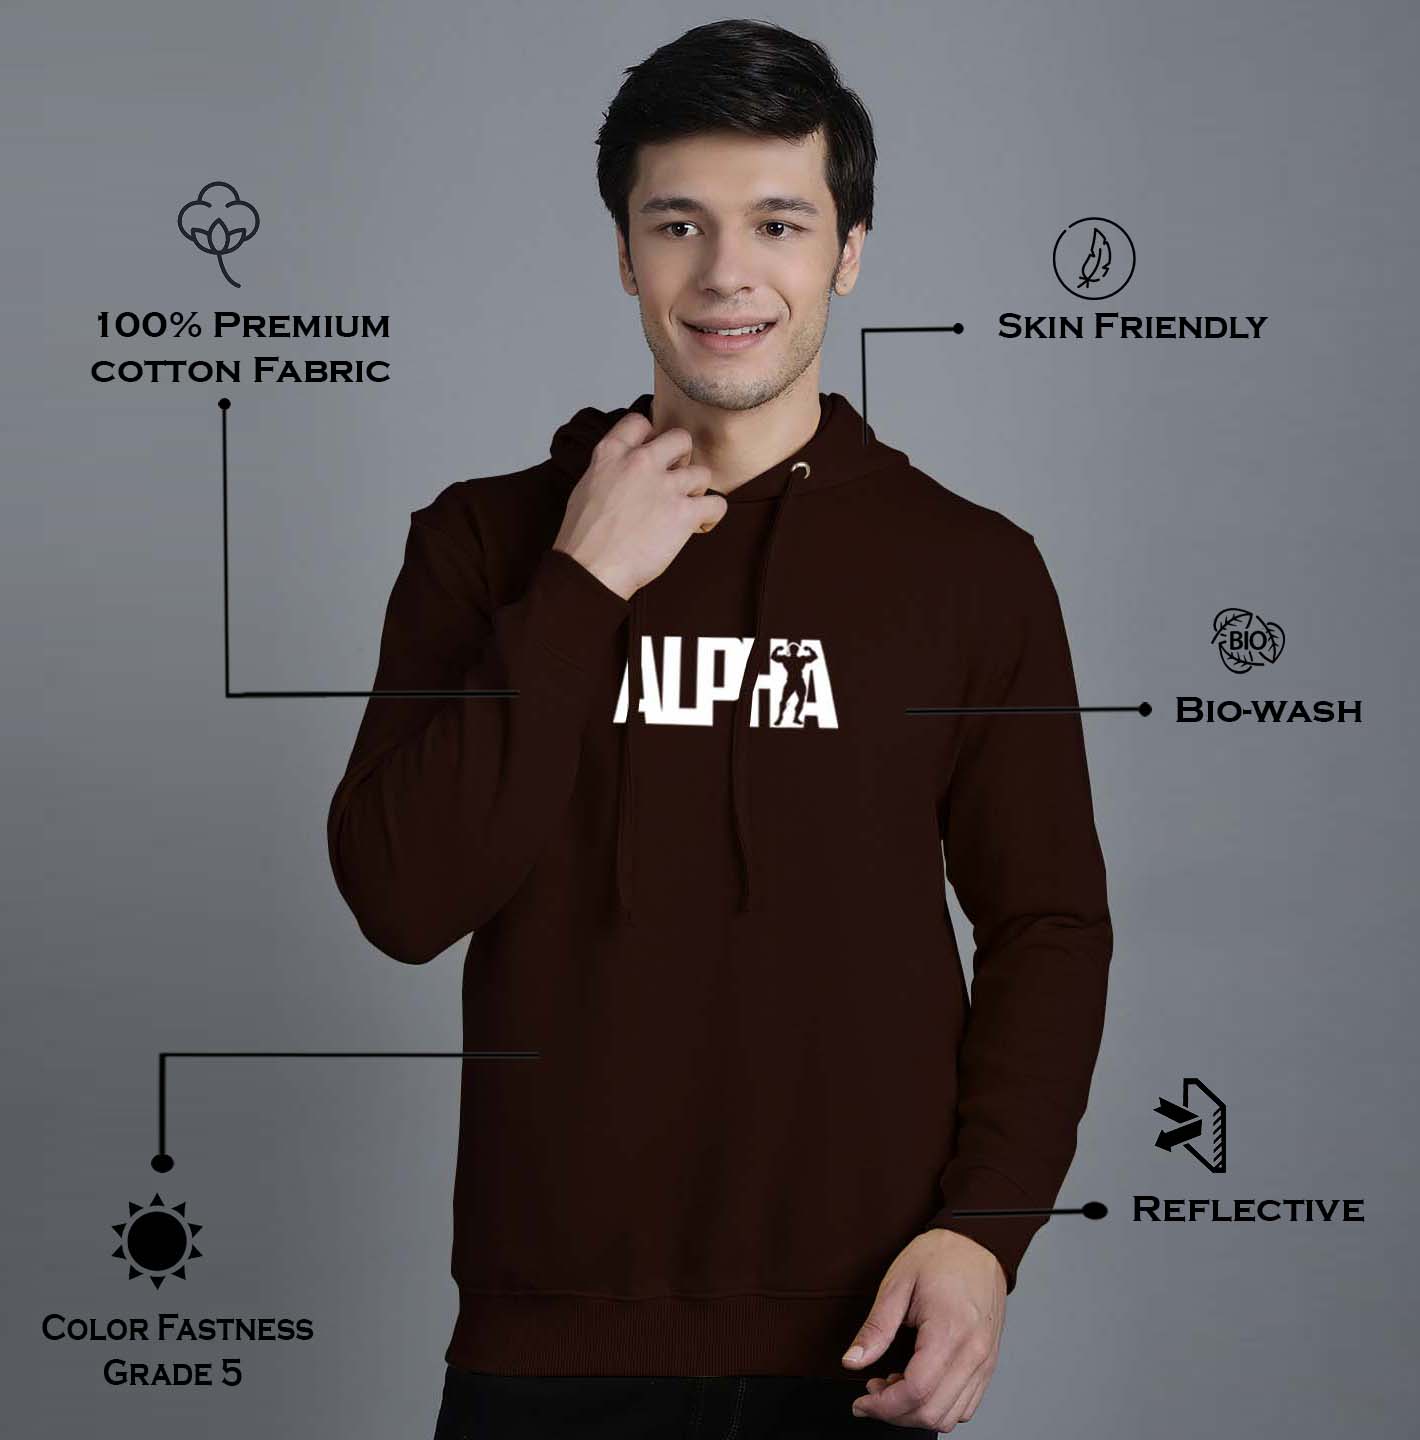 Men's Alpha Full Sleeves Hoody T-Shirt - Friskers